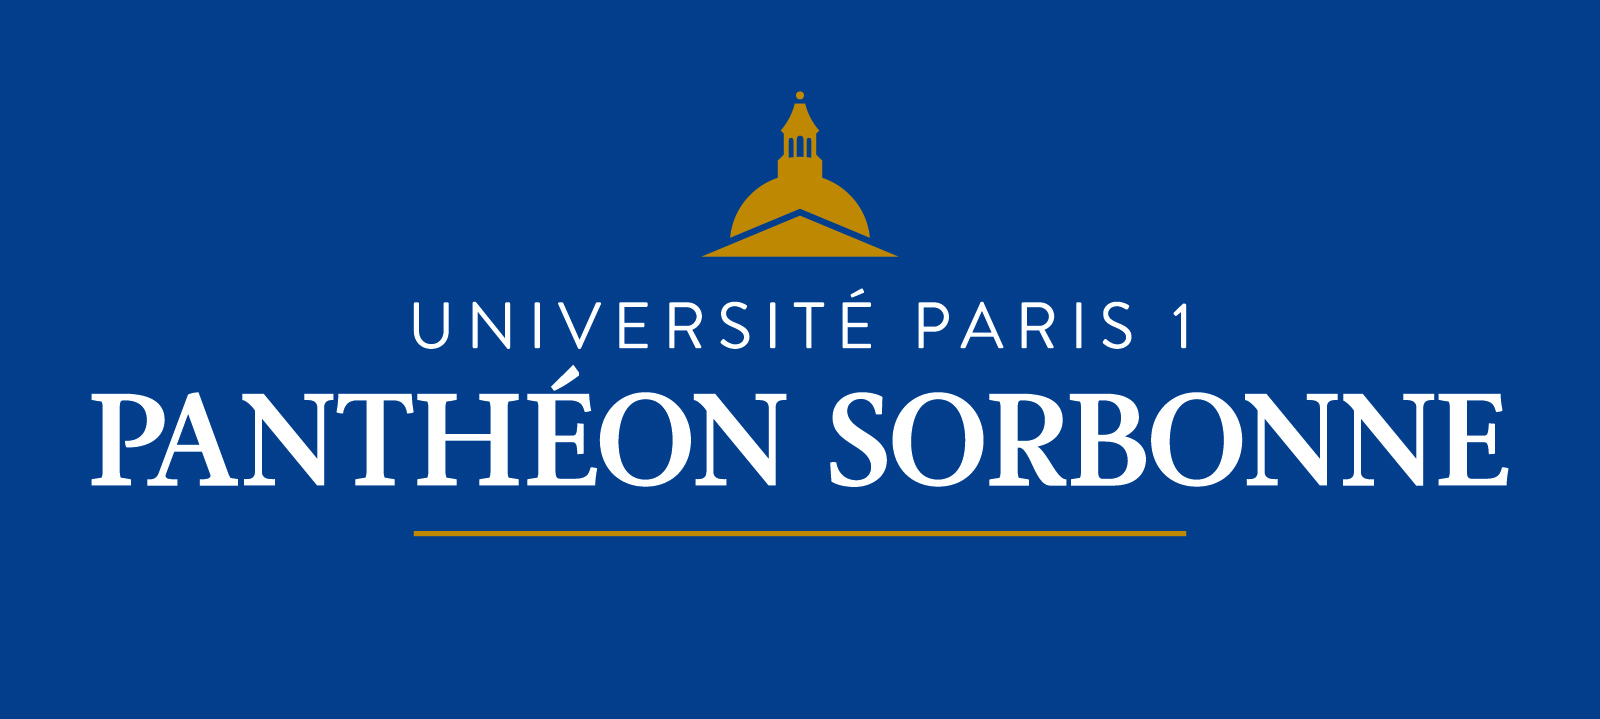 Université Panthéon Sorbonne